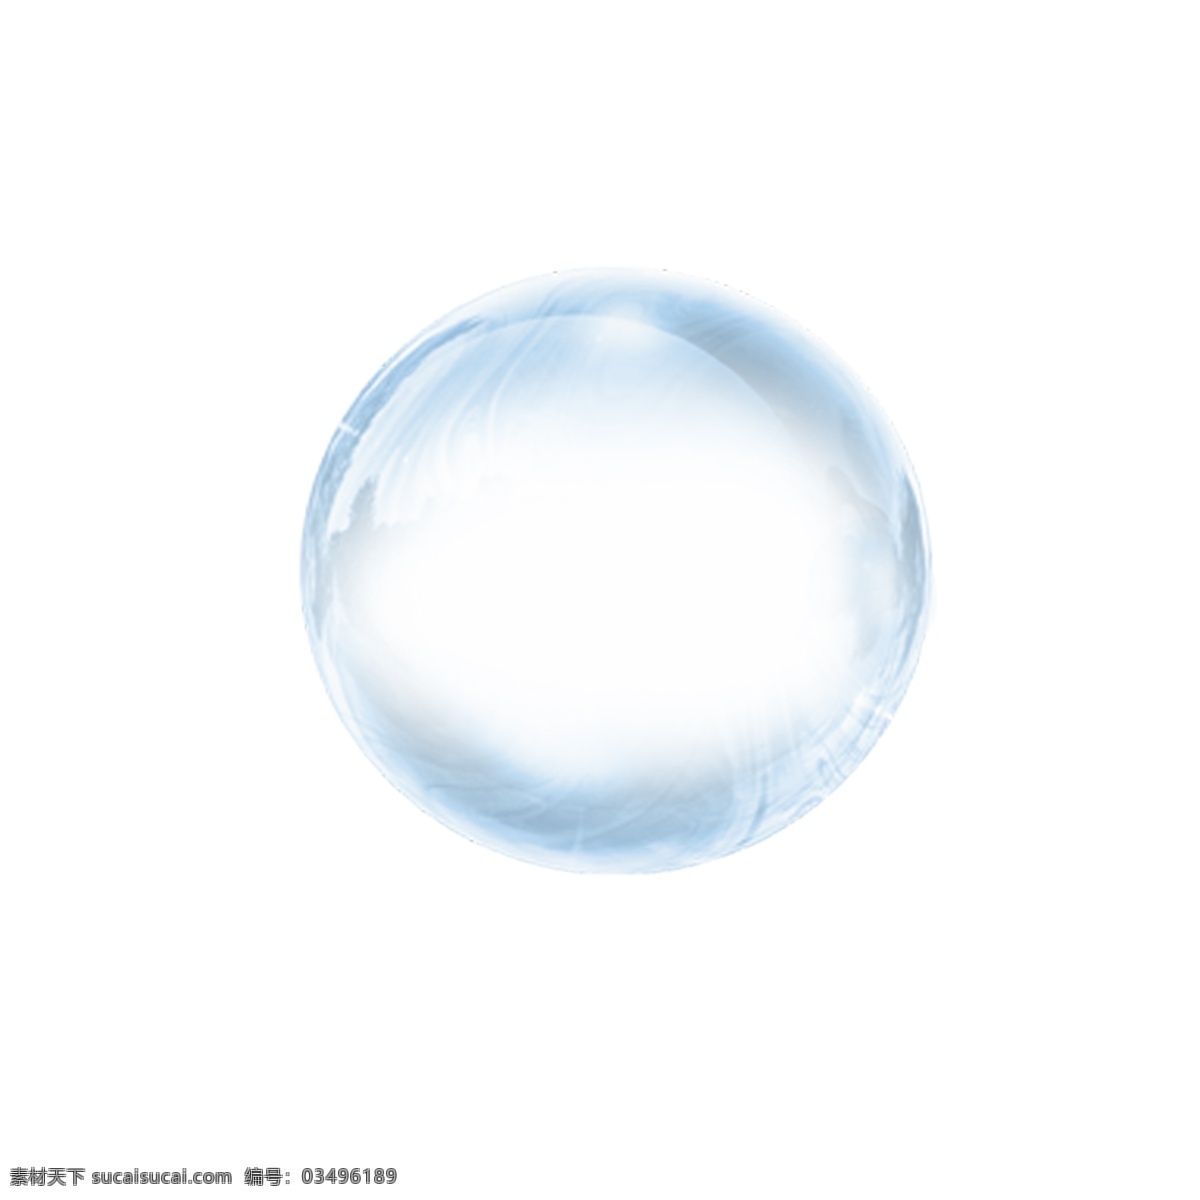 唯美 透明 气泡 商用 圆形 创意 装饰素材